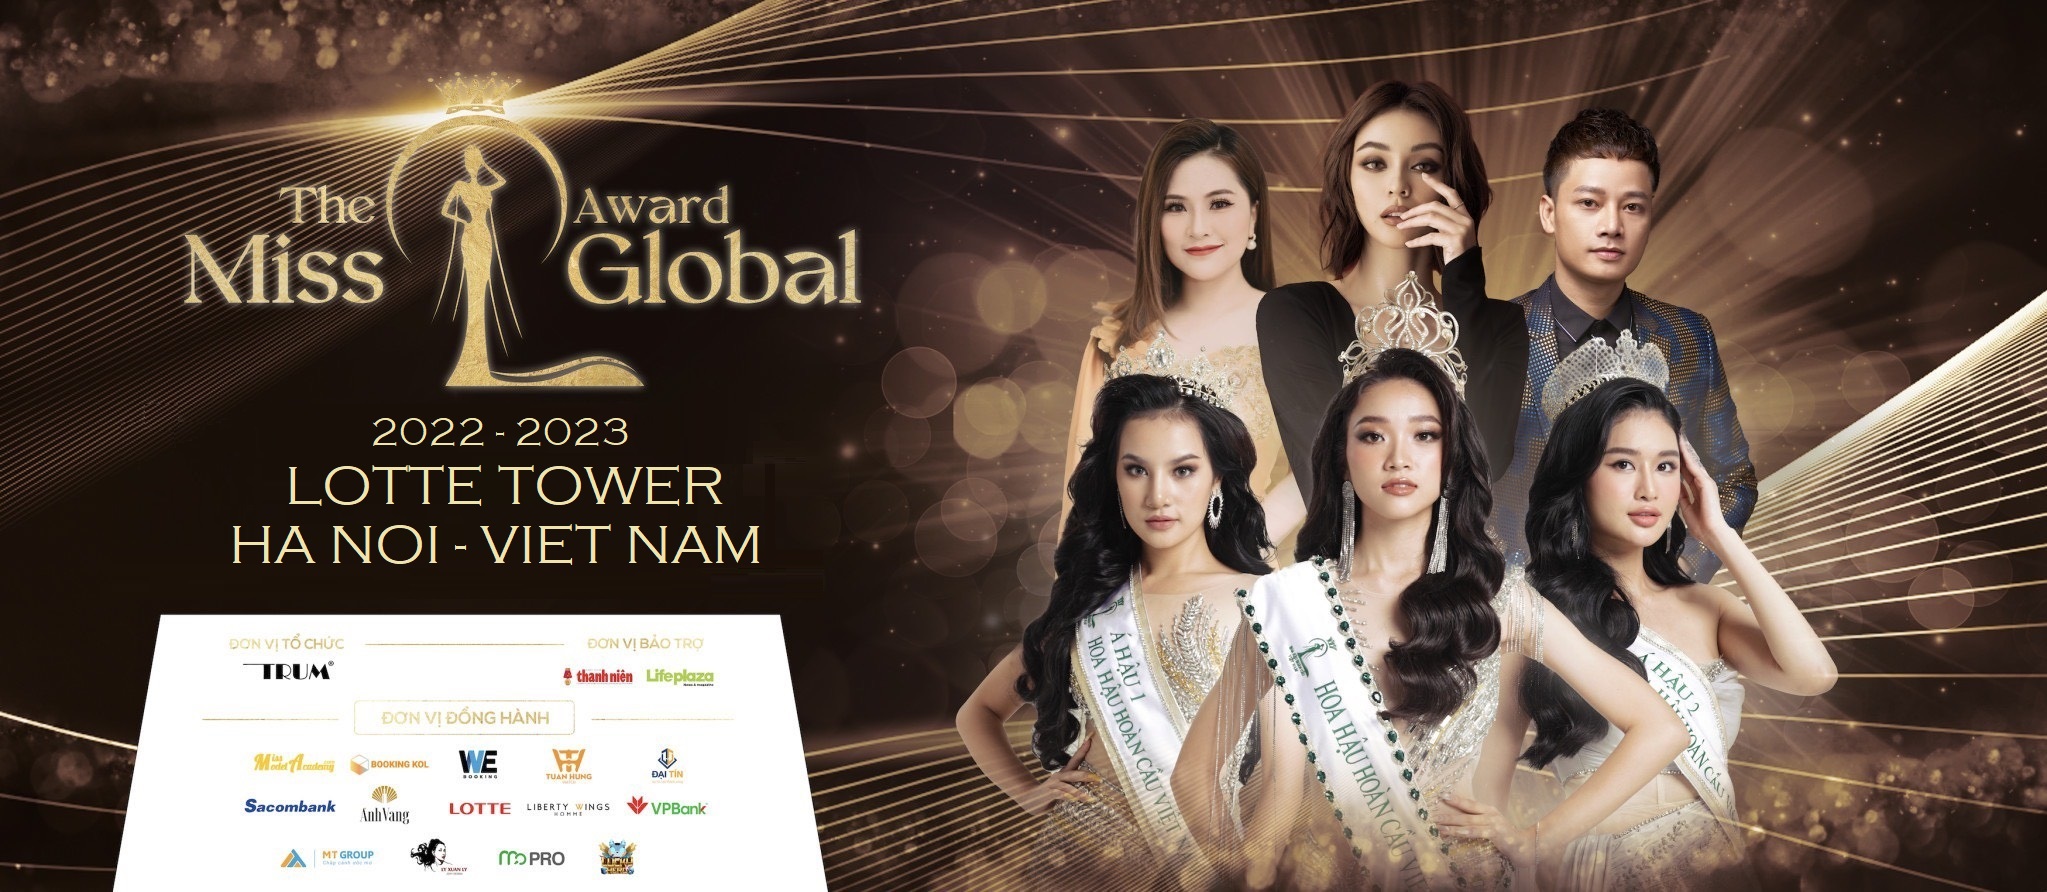 The Miss Global Award vinh danh Hoa hậu Hoàn cầu cùng Doanh nhân - Người nổi tiếng có tầm ảnh hưởng